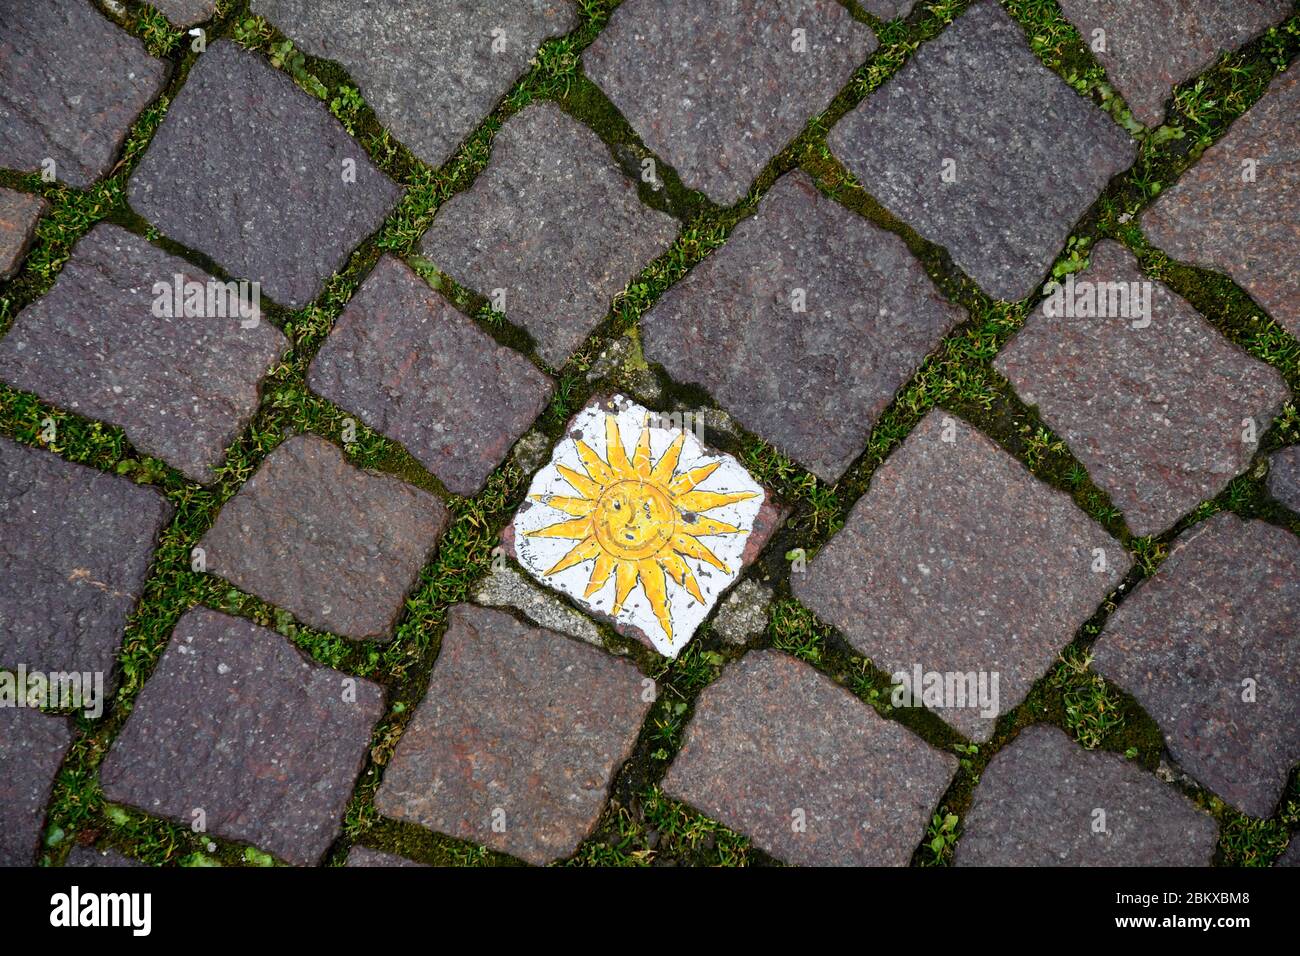 Primo piano di un pavimento in strada a cubetti di porfido nel centro storico di Bardolino con decorazione dipinta a mano raffigurante un sole, Verona, Veneto, Italia Foto Stock